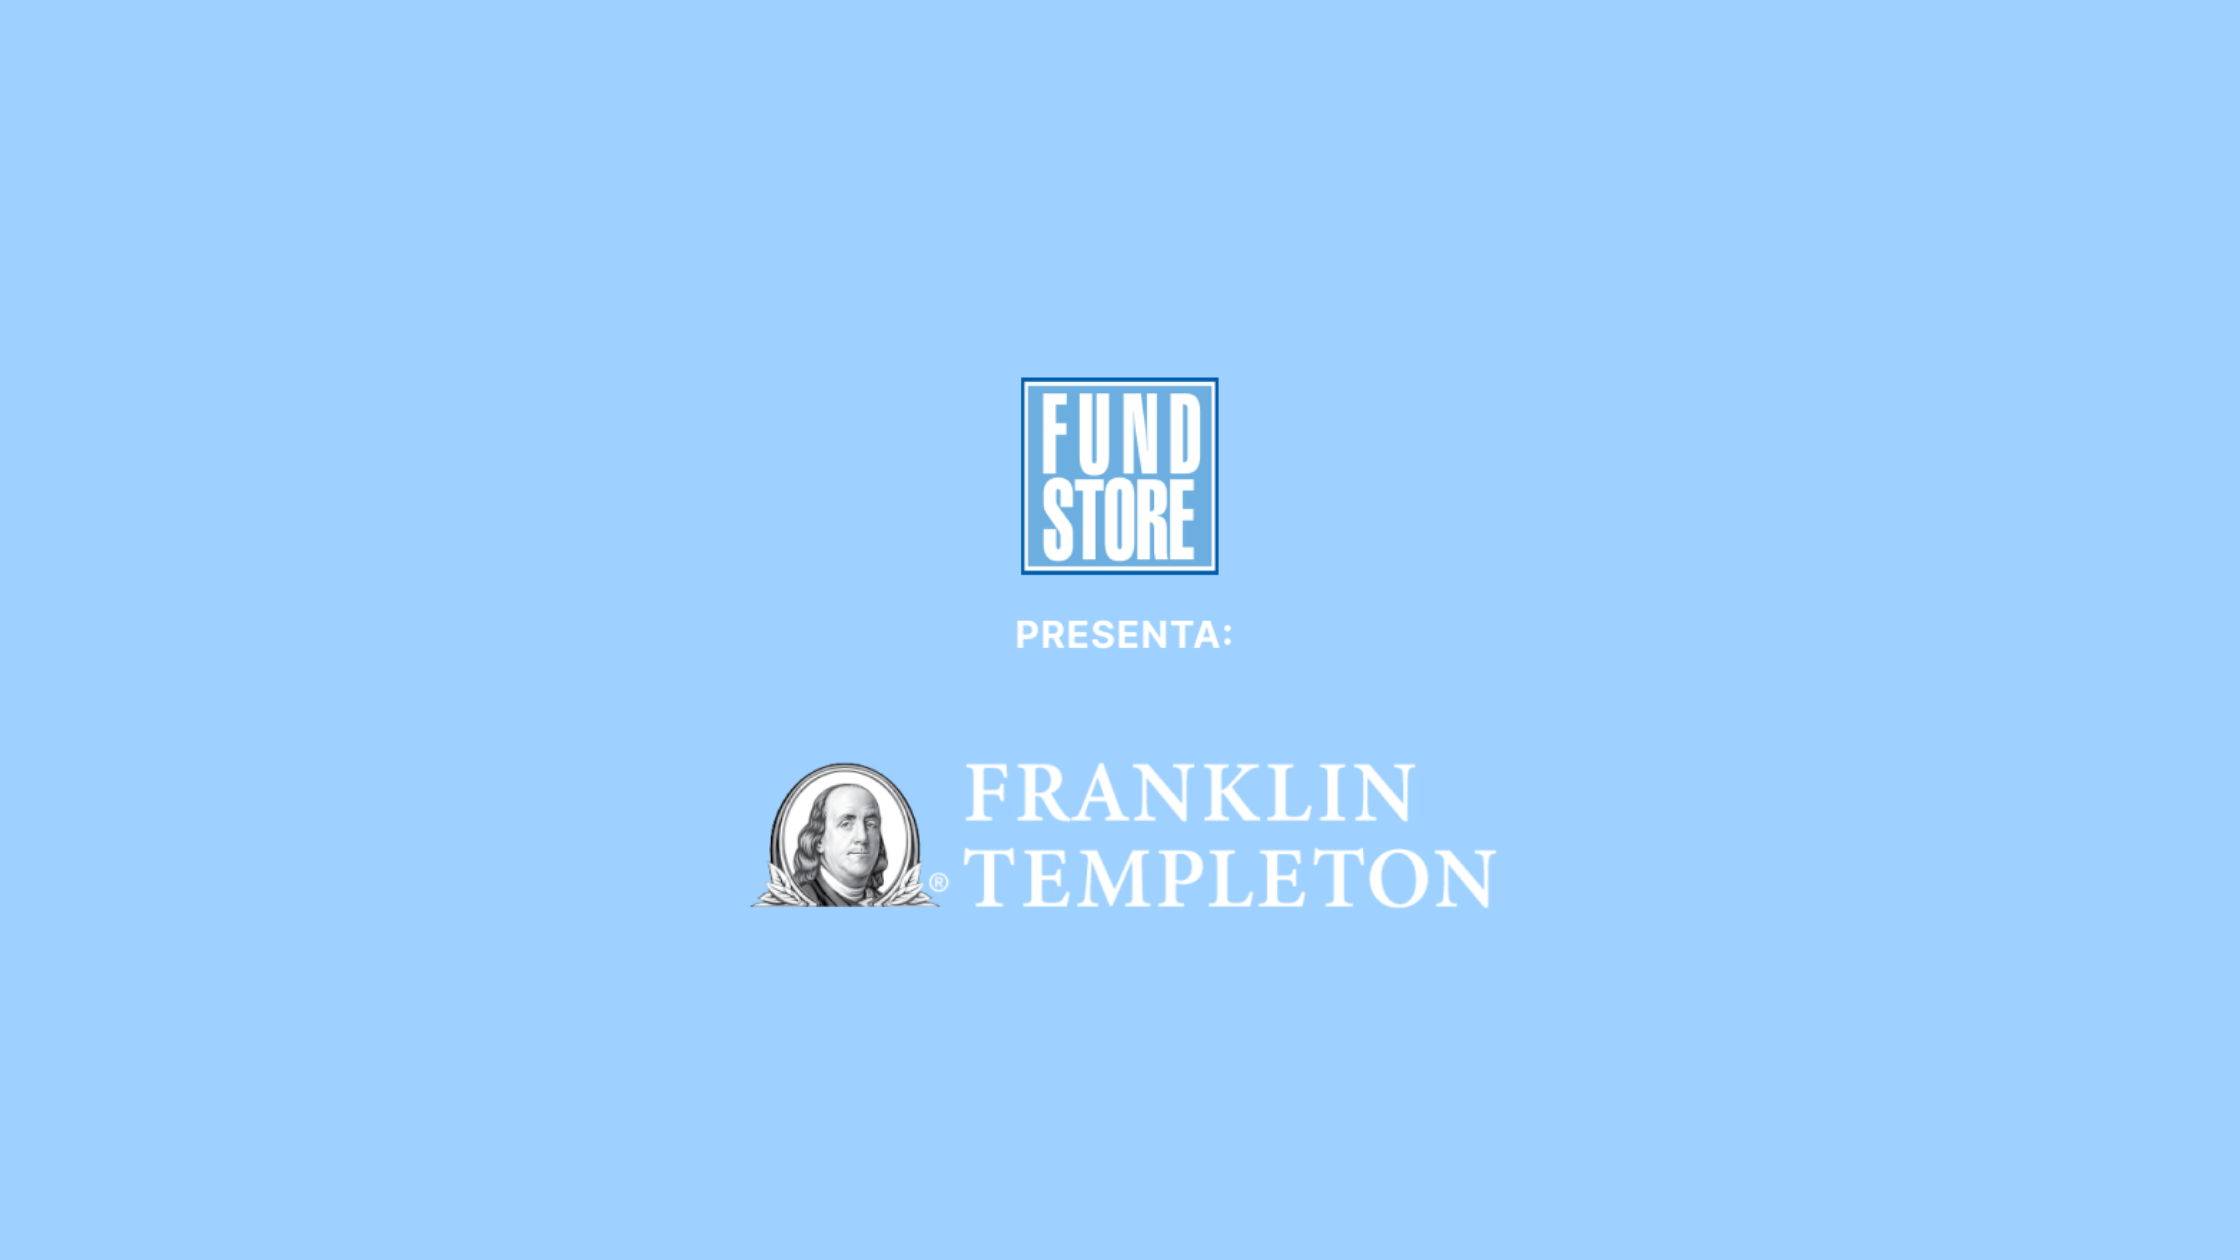 Fundstore presenta la Frankling Templeton investment Funds